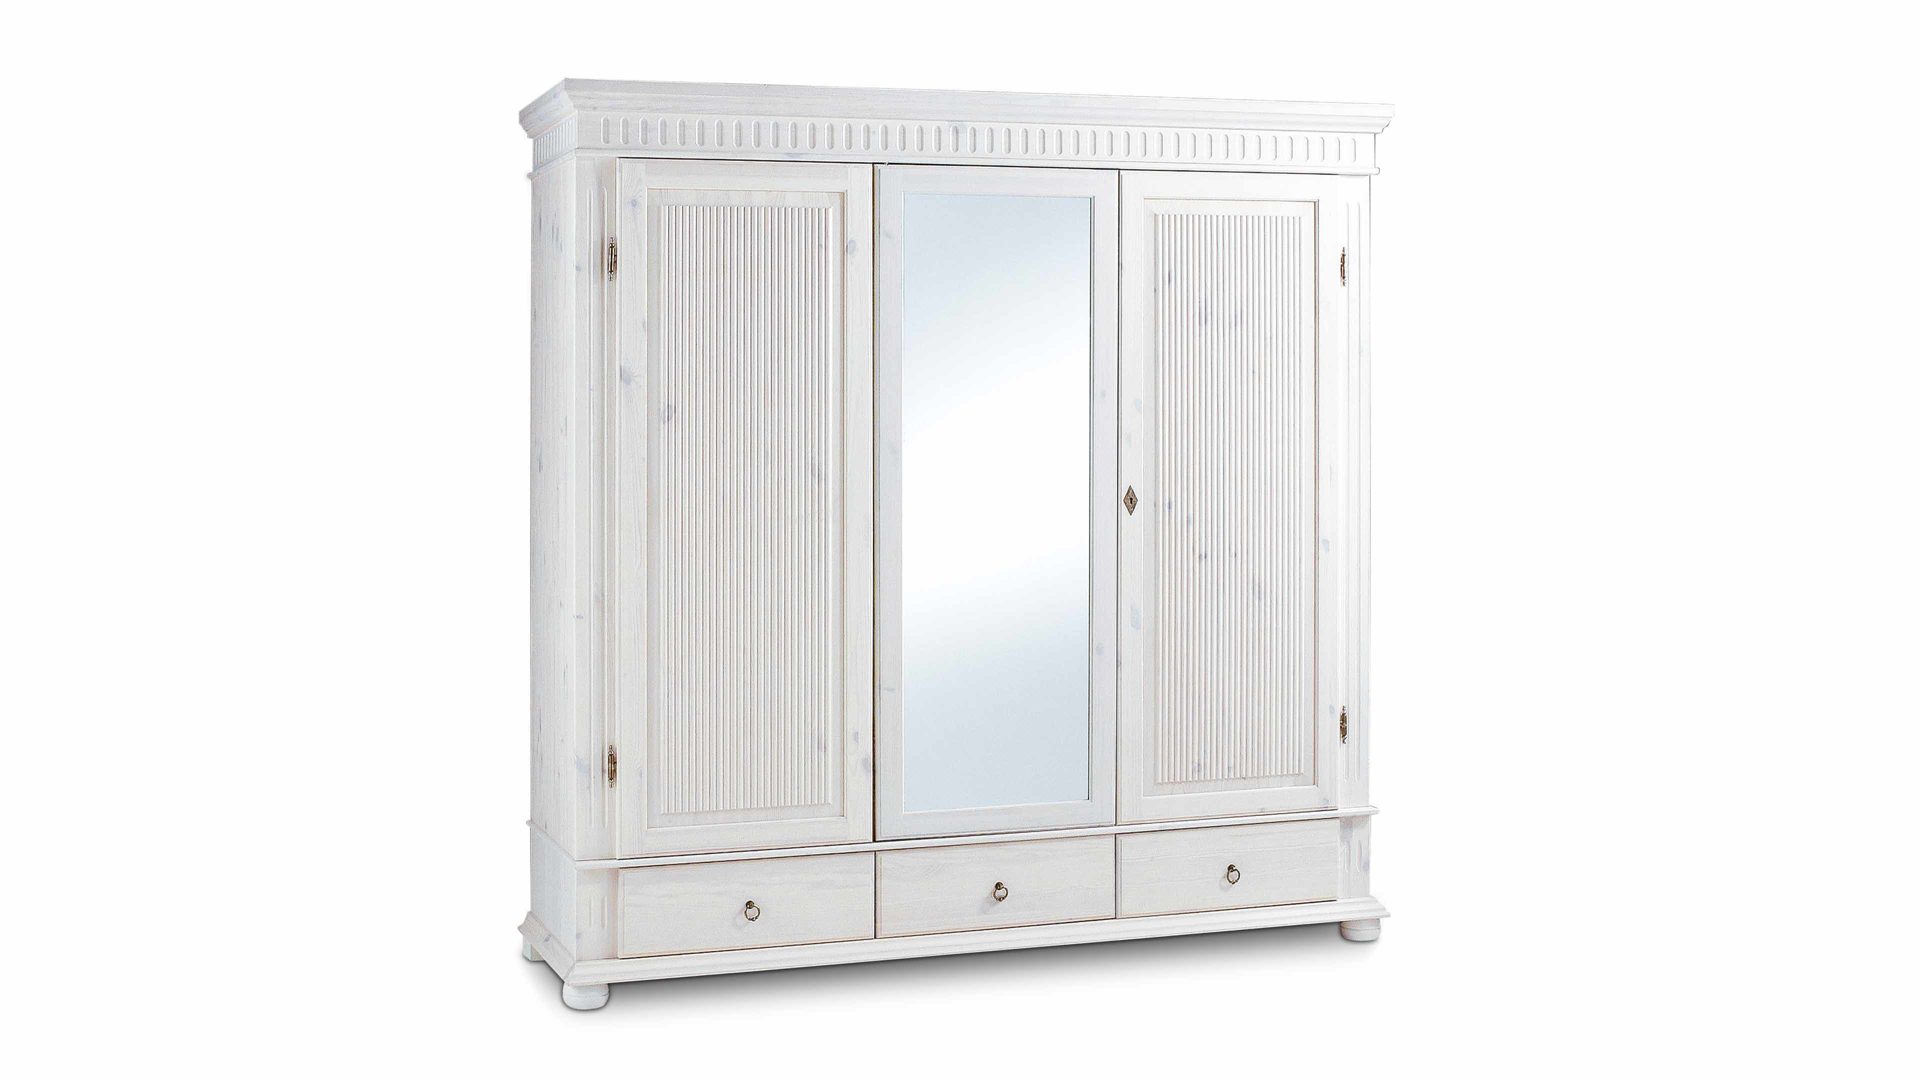 Kleiderschrank Euro diffusion aus Holz in Weiß Landhaus-Kleiderschrank, ein Einzelschrank im Landhausstil  weiß lackiertes Kiefernholz - zwei Holztüren, eine Spiegeltür, drei Schubladen